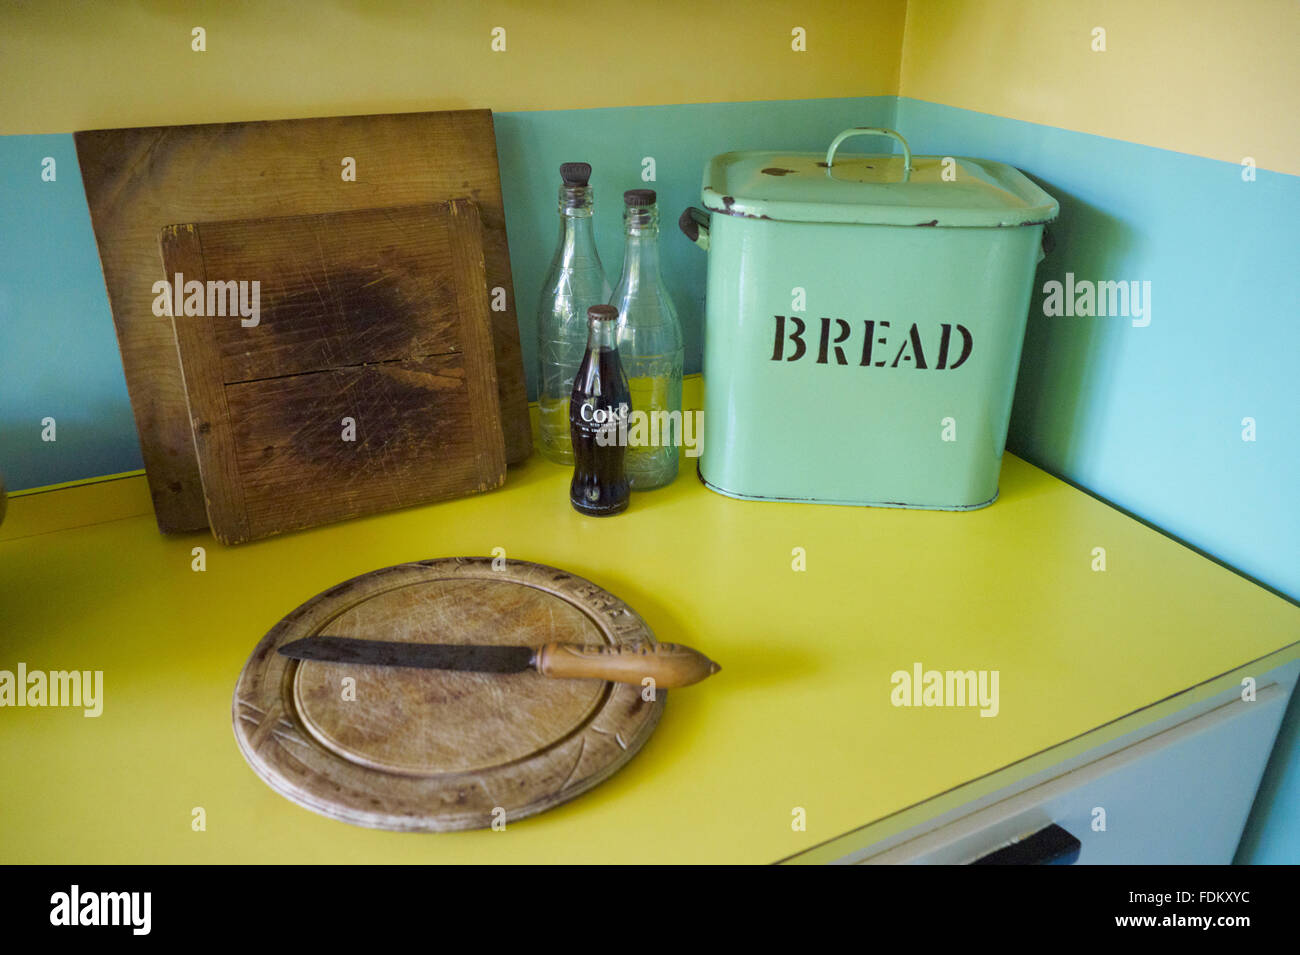 Smalto pane bin e il pane di legno pannelli in cucina a Mendips, la casa d'infanzia di John Lennon in Woolton, Liverpool. Foto Stock